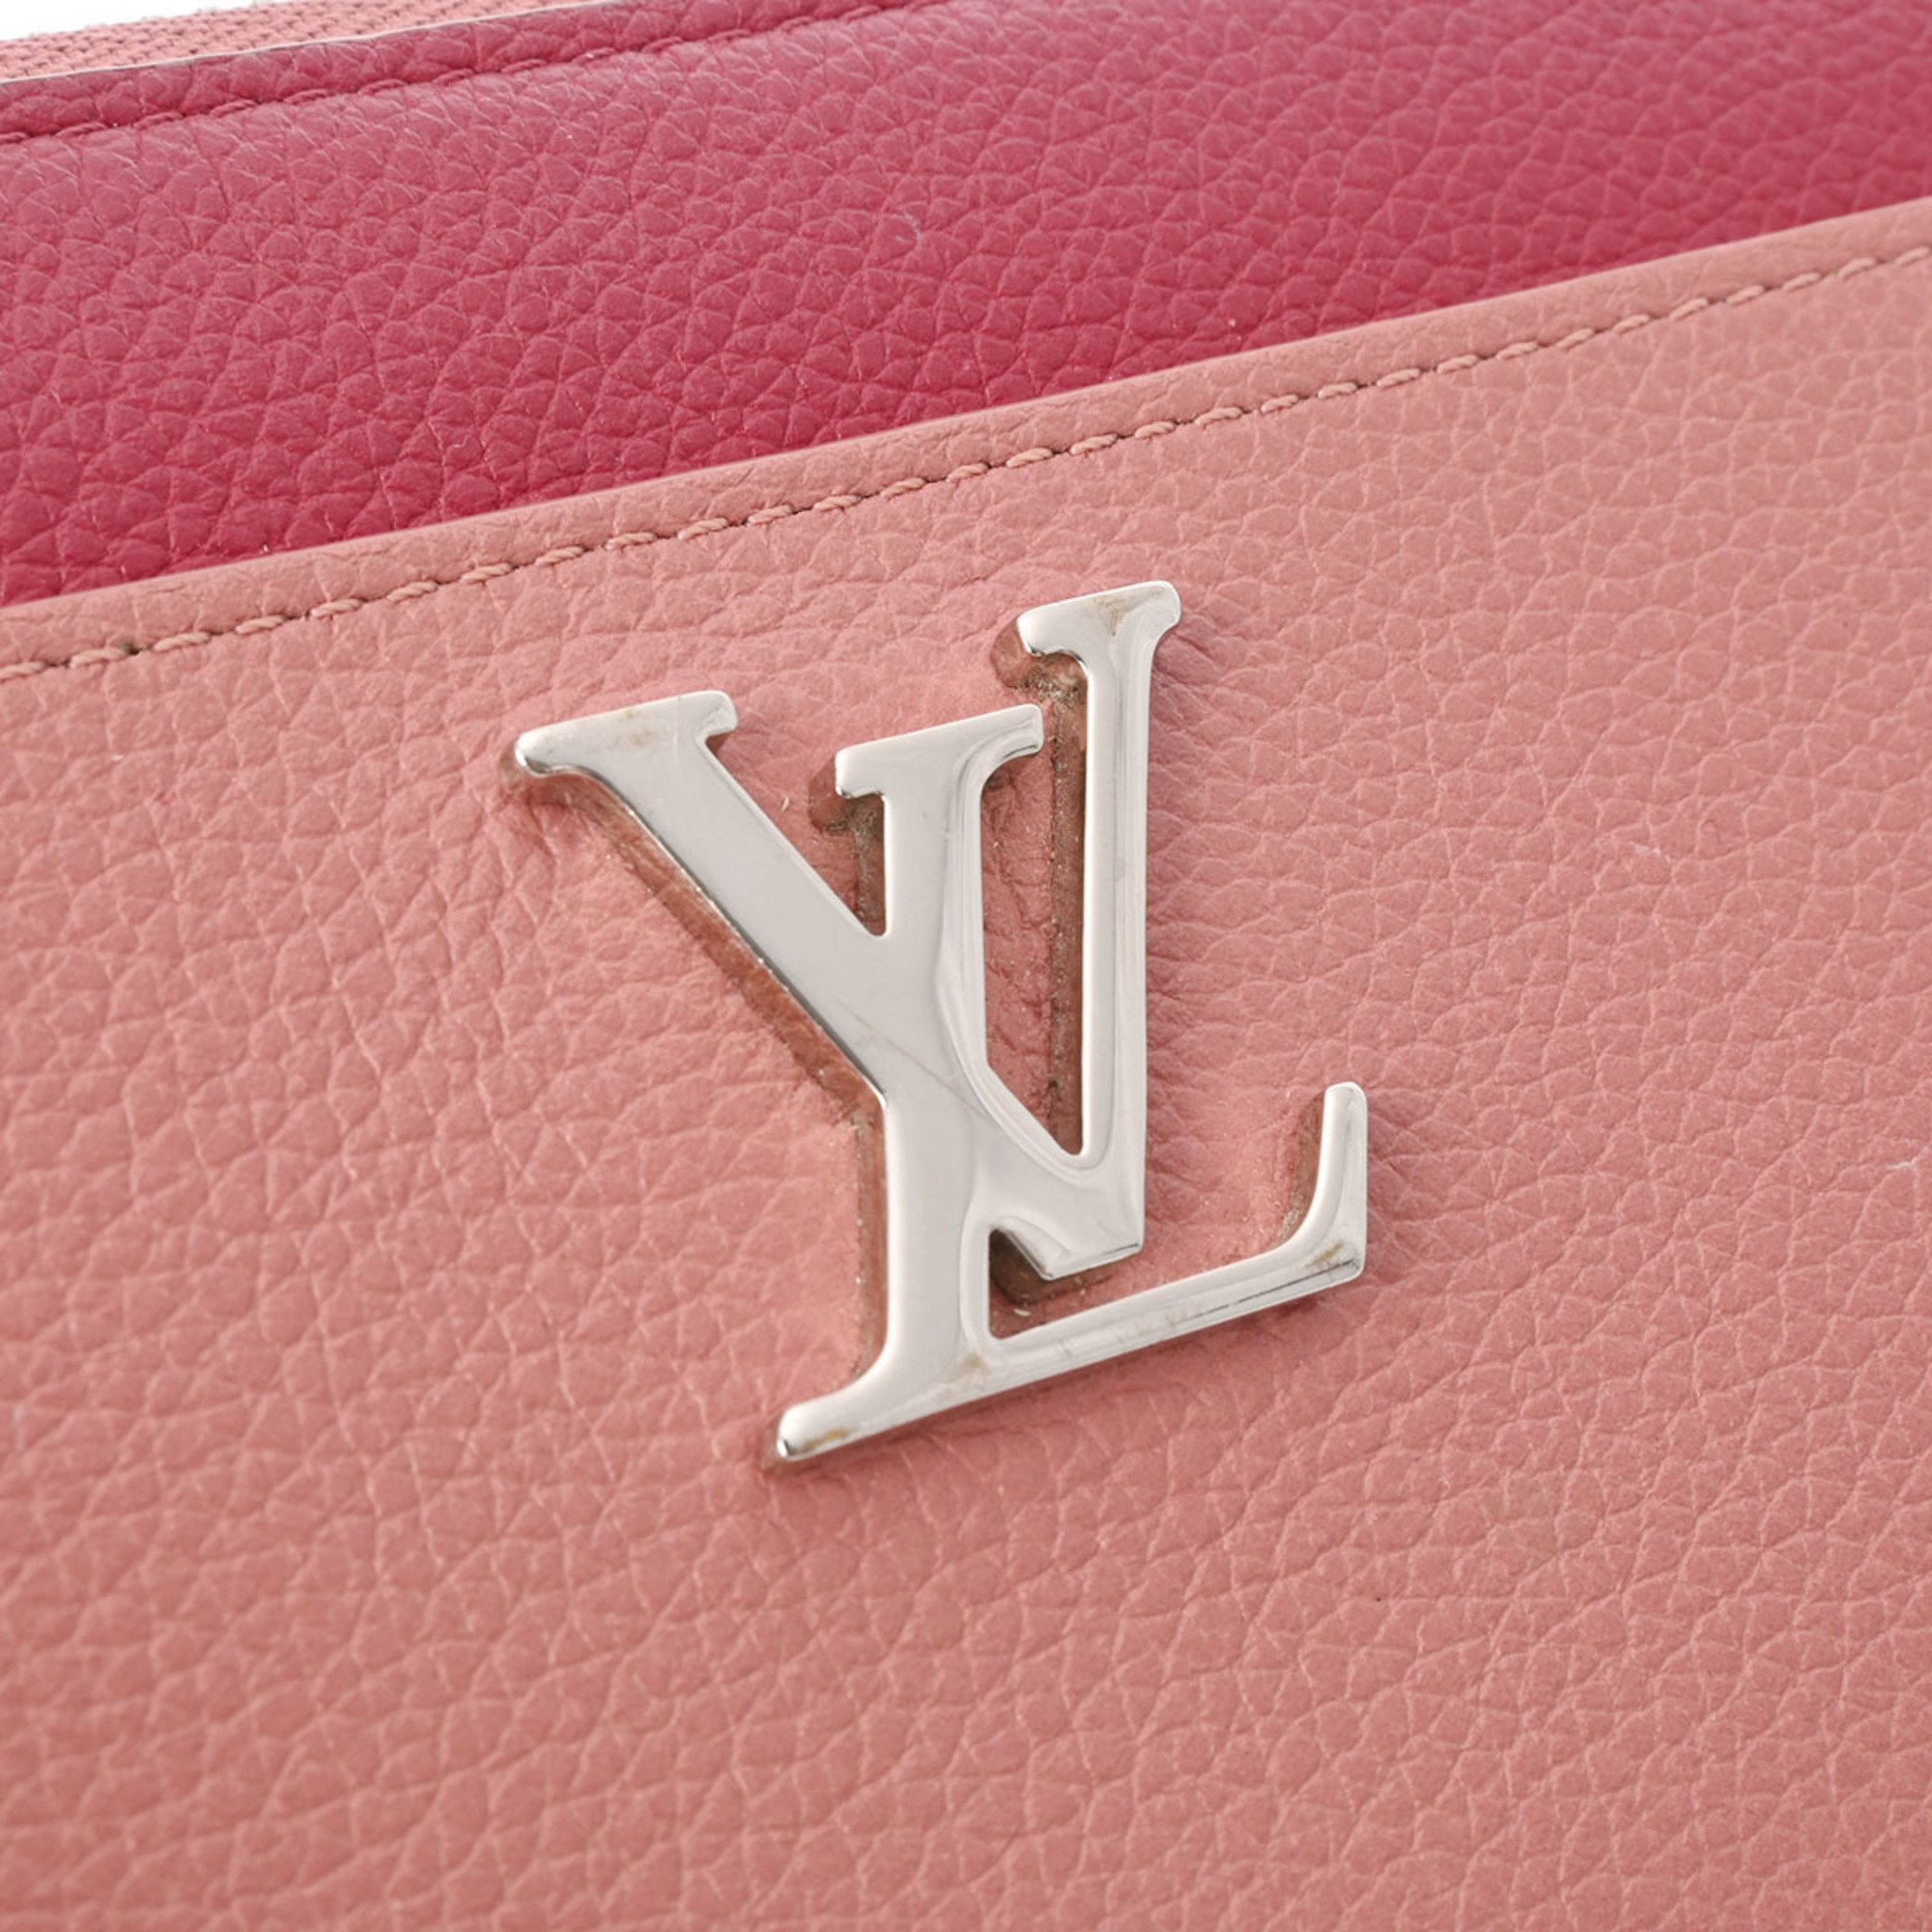 LOUIS VUITTON Louis Vuitton Zippy Lock Me Rose Poudre/Rideau Van M62949 Women's Leather Long Wallet